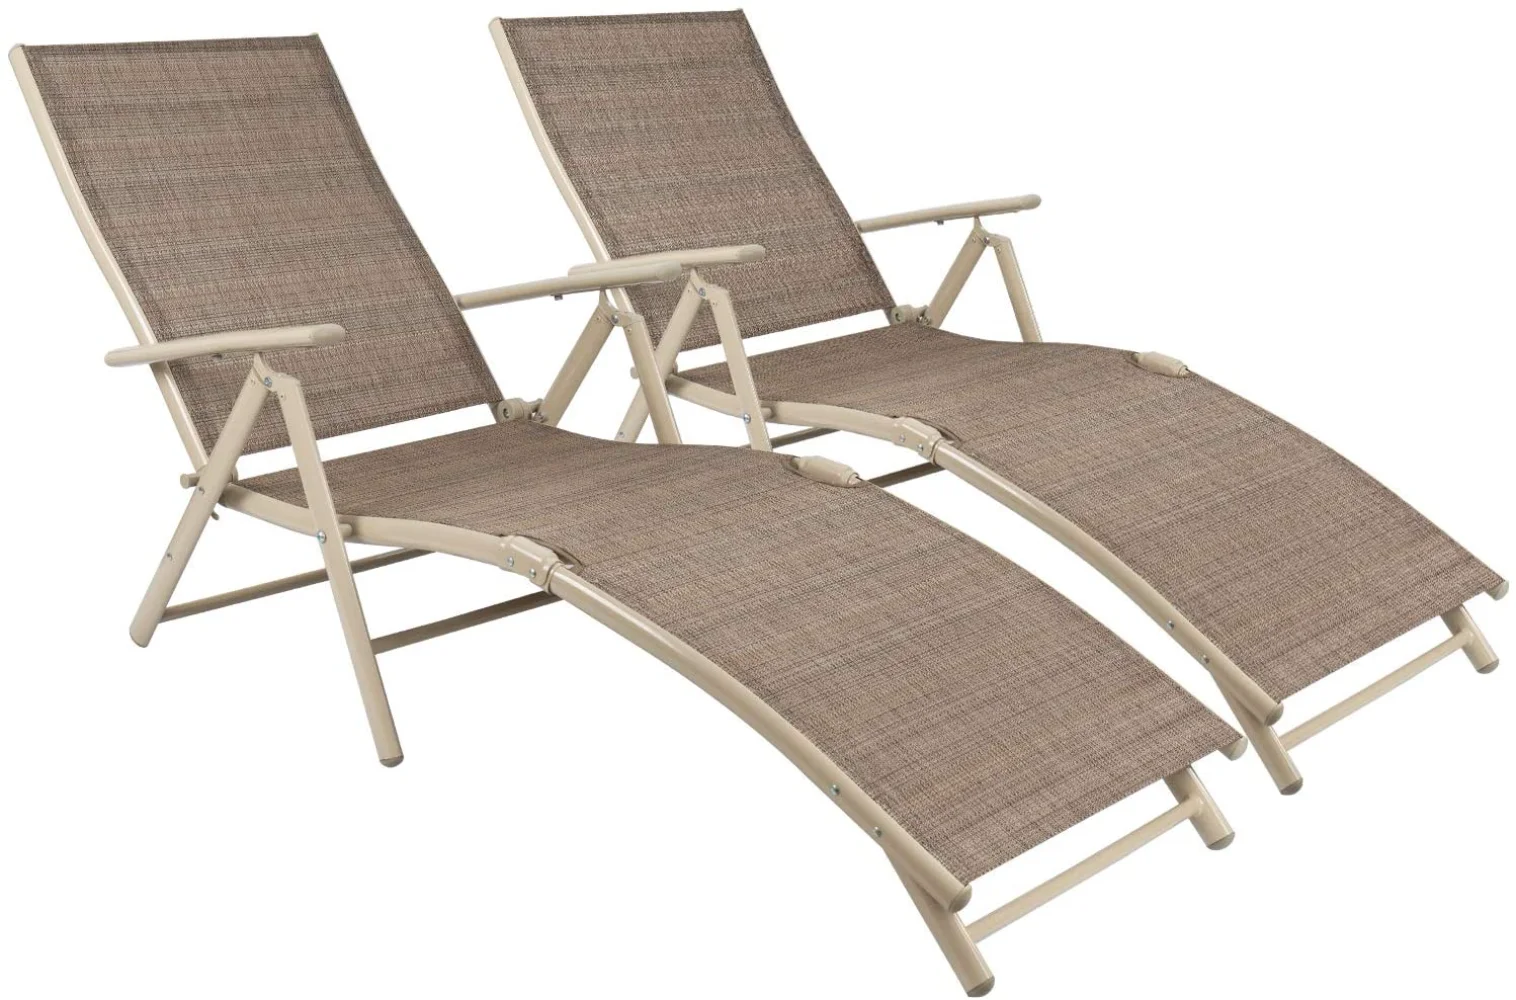 

Комплект из 2 стульев для патио, пляжный Регулируемый шезлонг, уличный бассейн, боковые складные кресла, бежевое складное кресло с откидывающейся спинкой